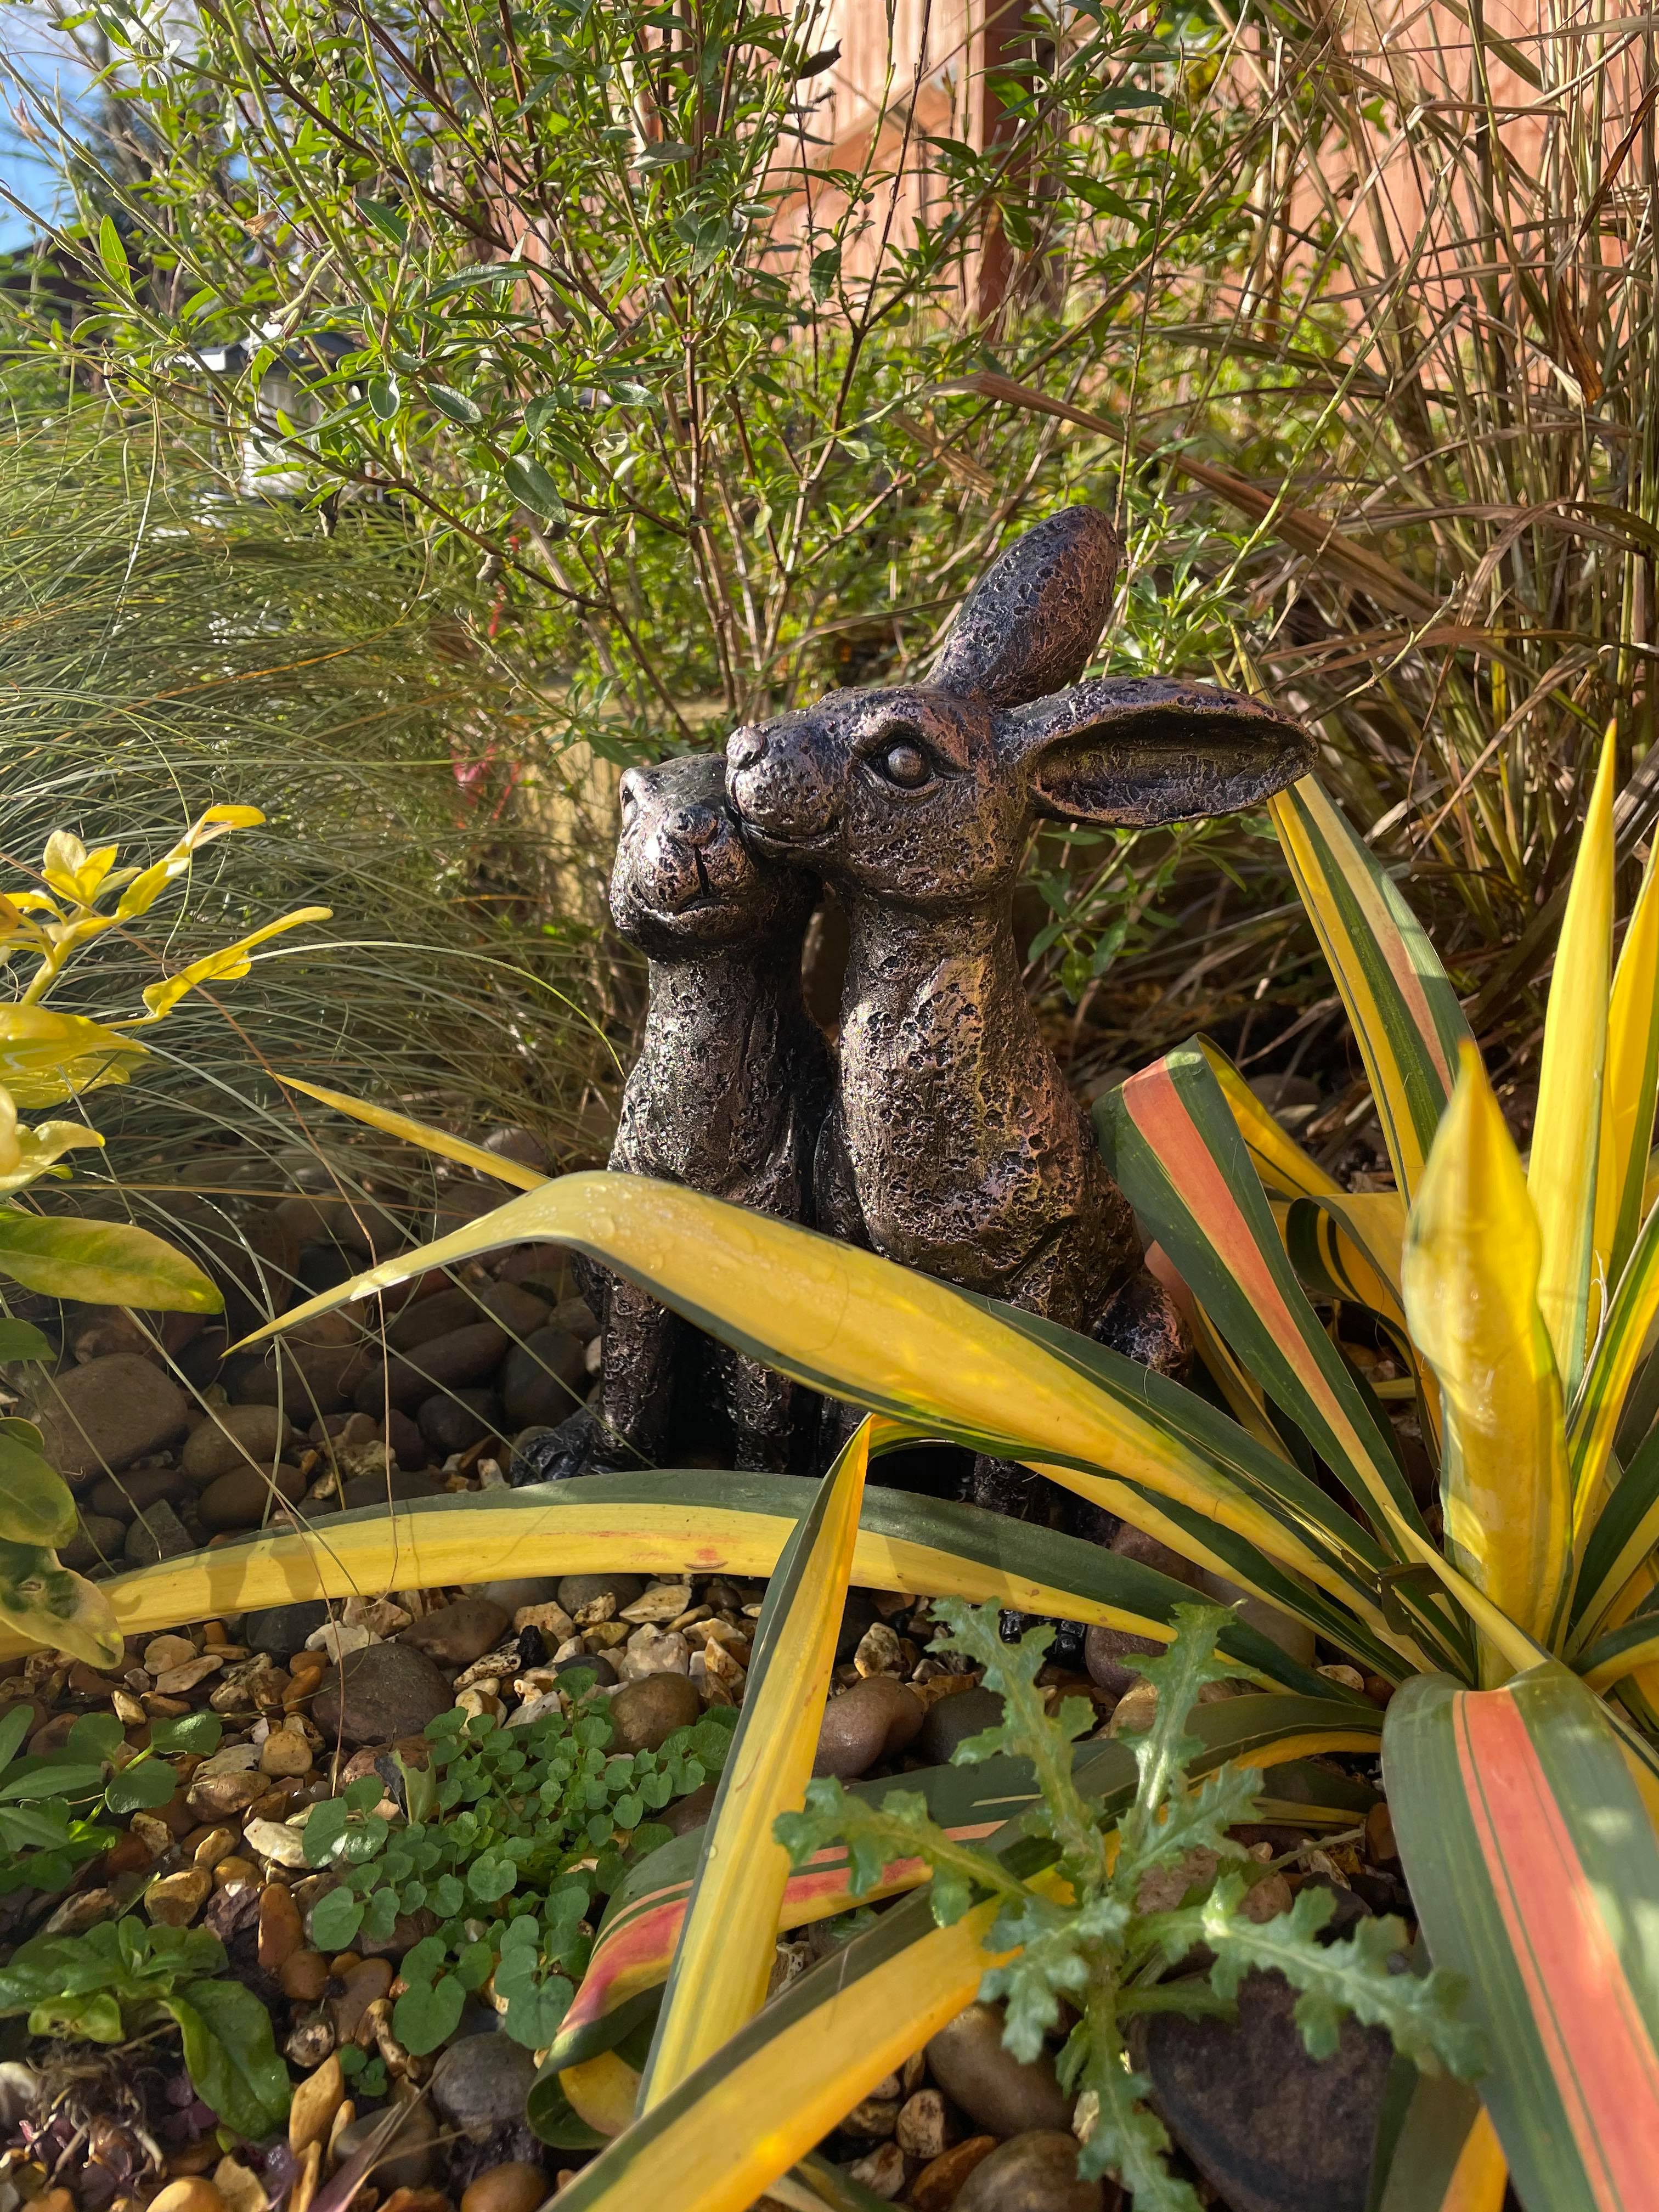 Happy Hares